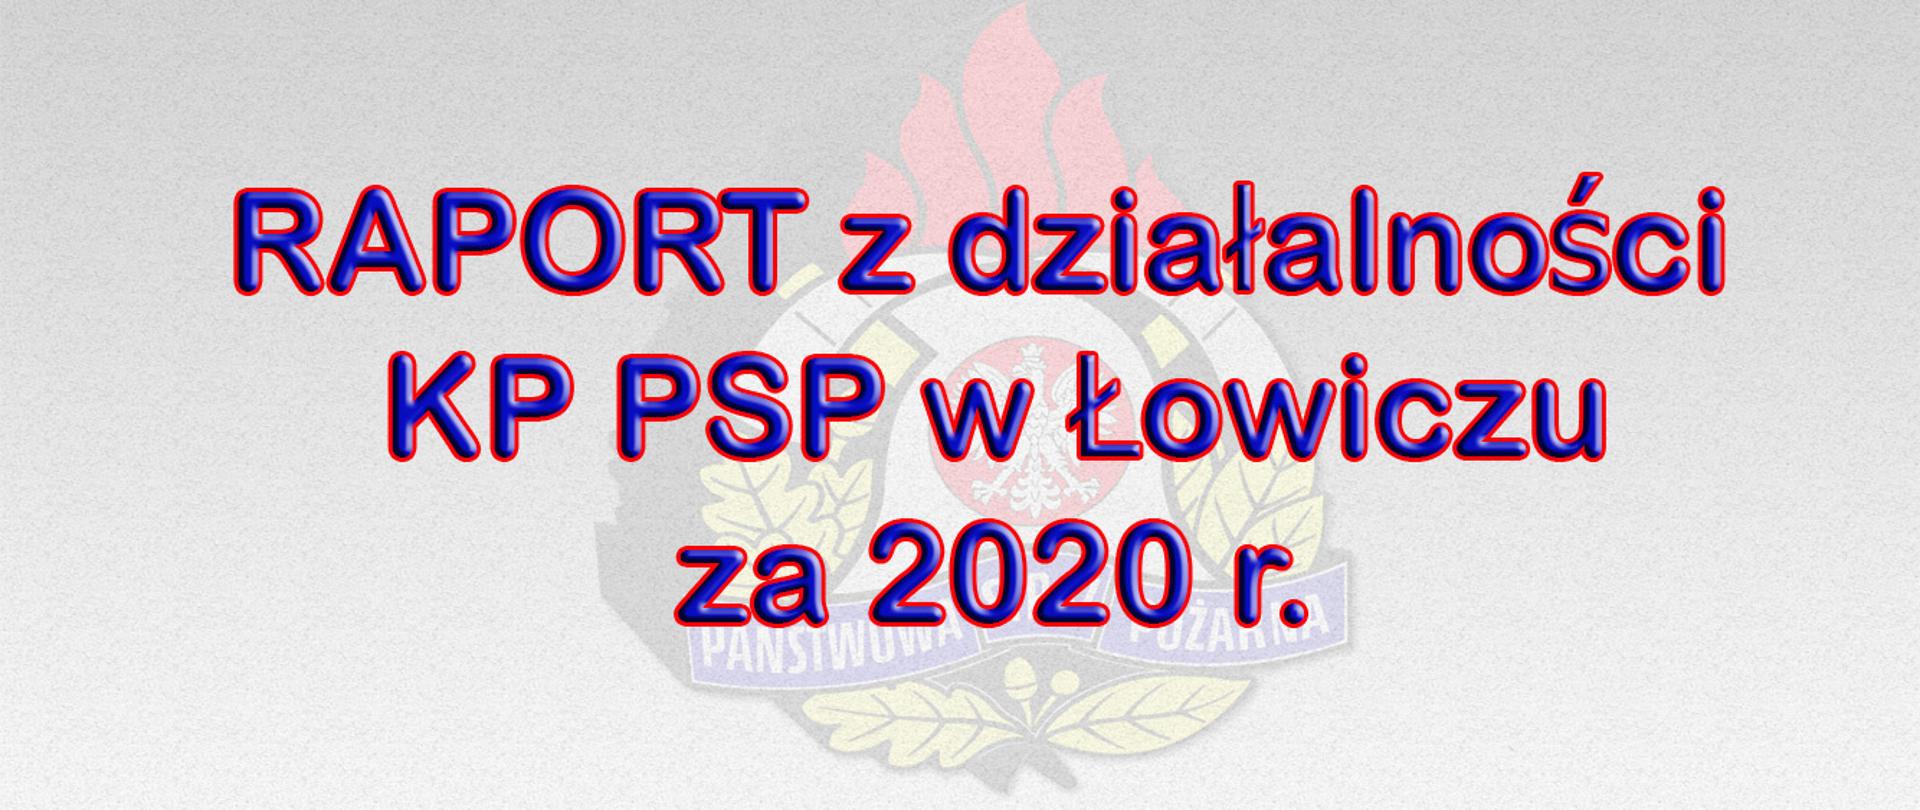 zdjęcie zawiera godło psp w tle, na pierwszym planie napis RAPORT z działalności KP PSP w Łowiczu za 2020 r.